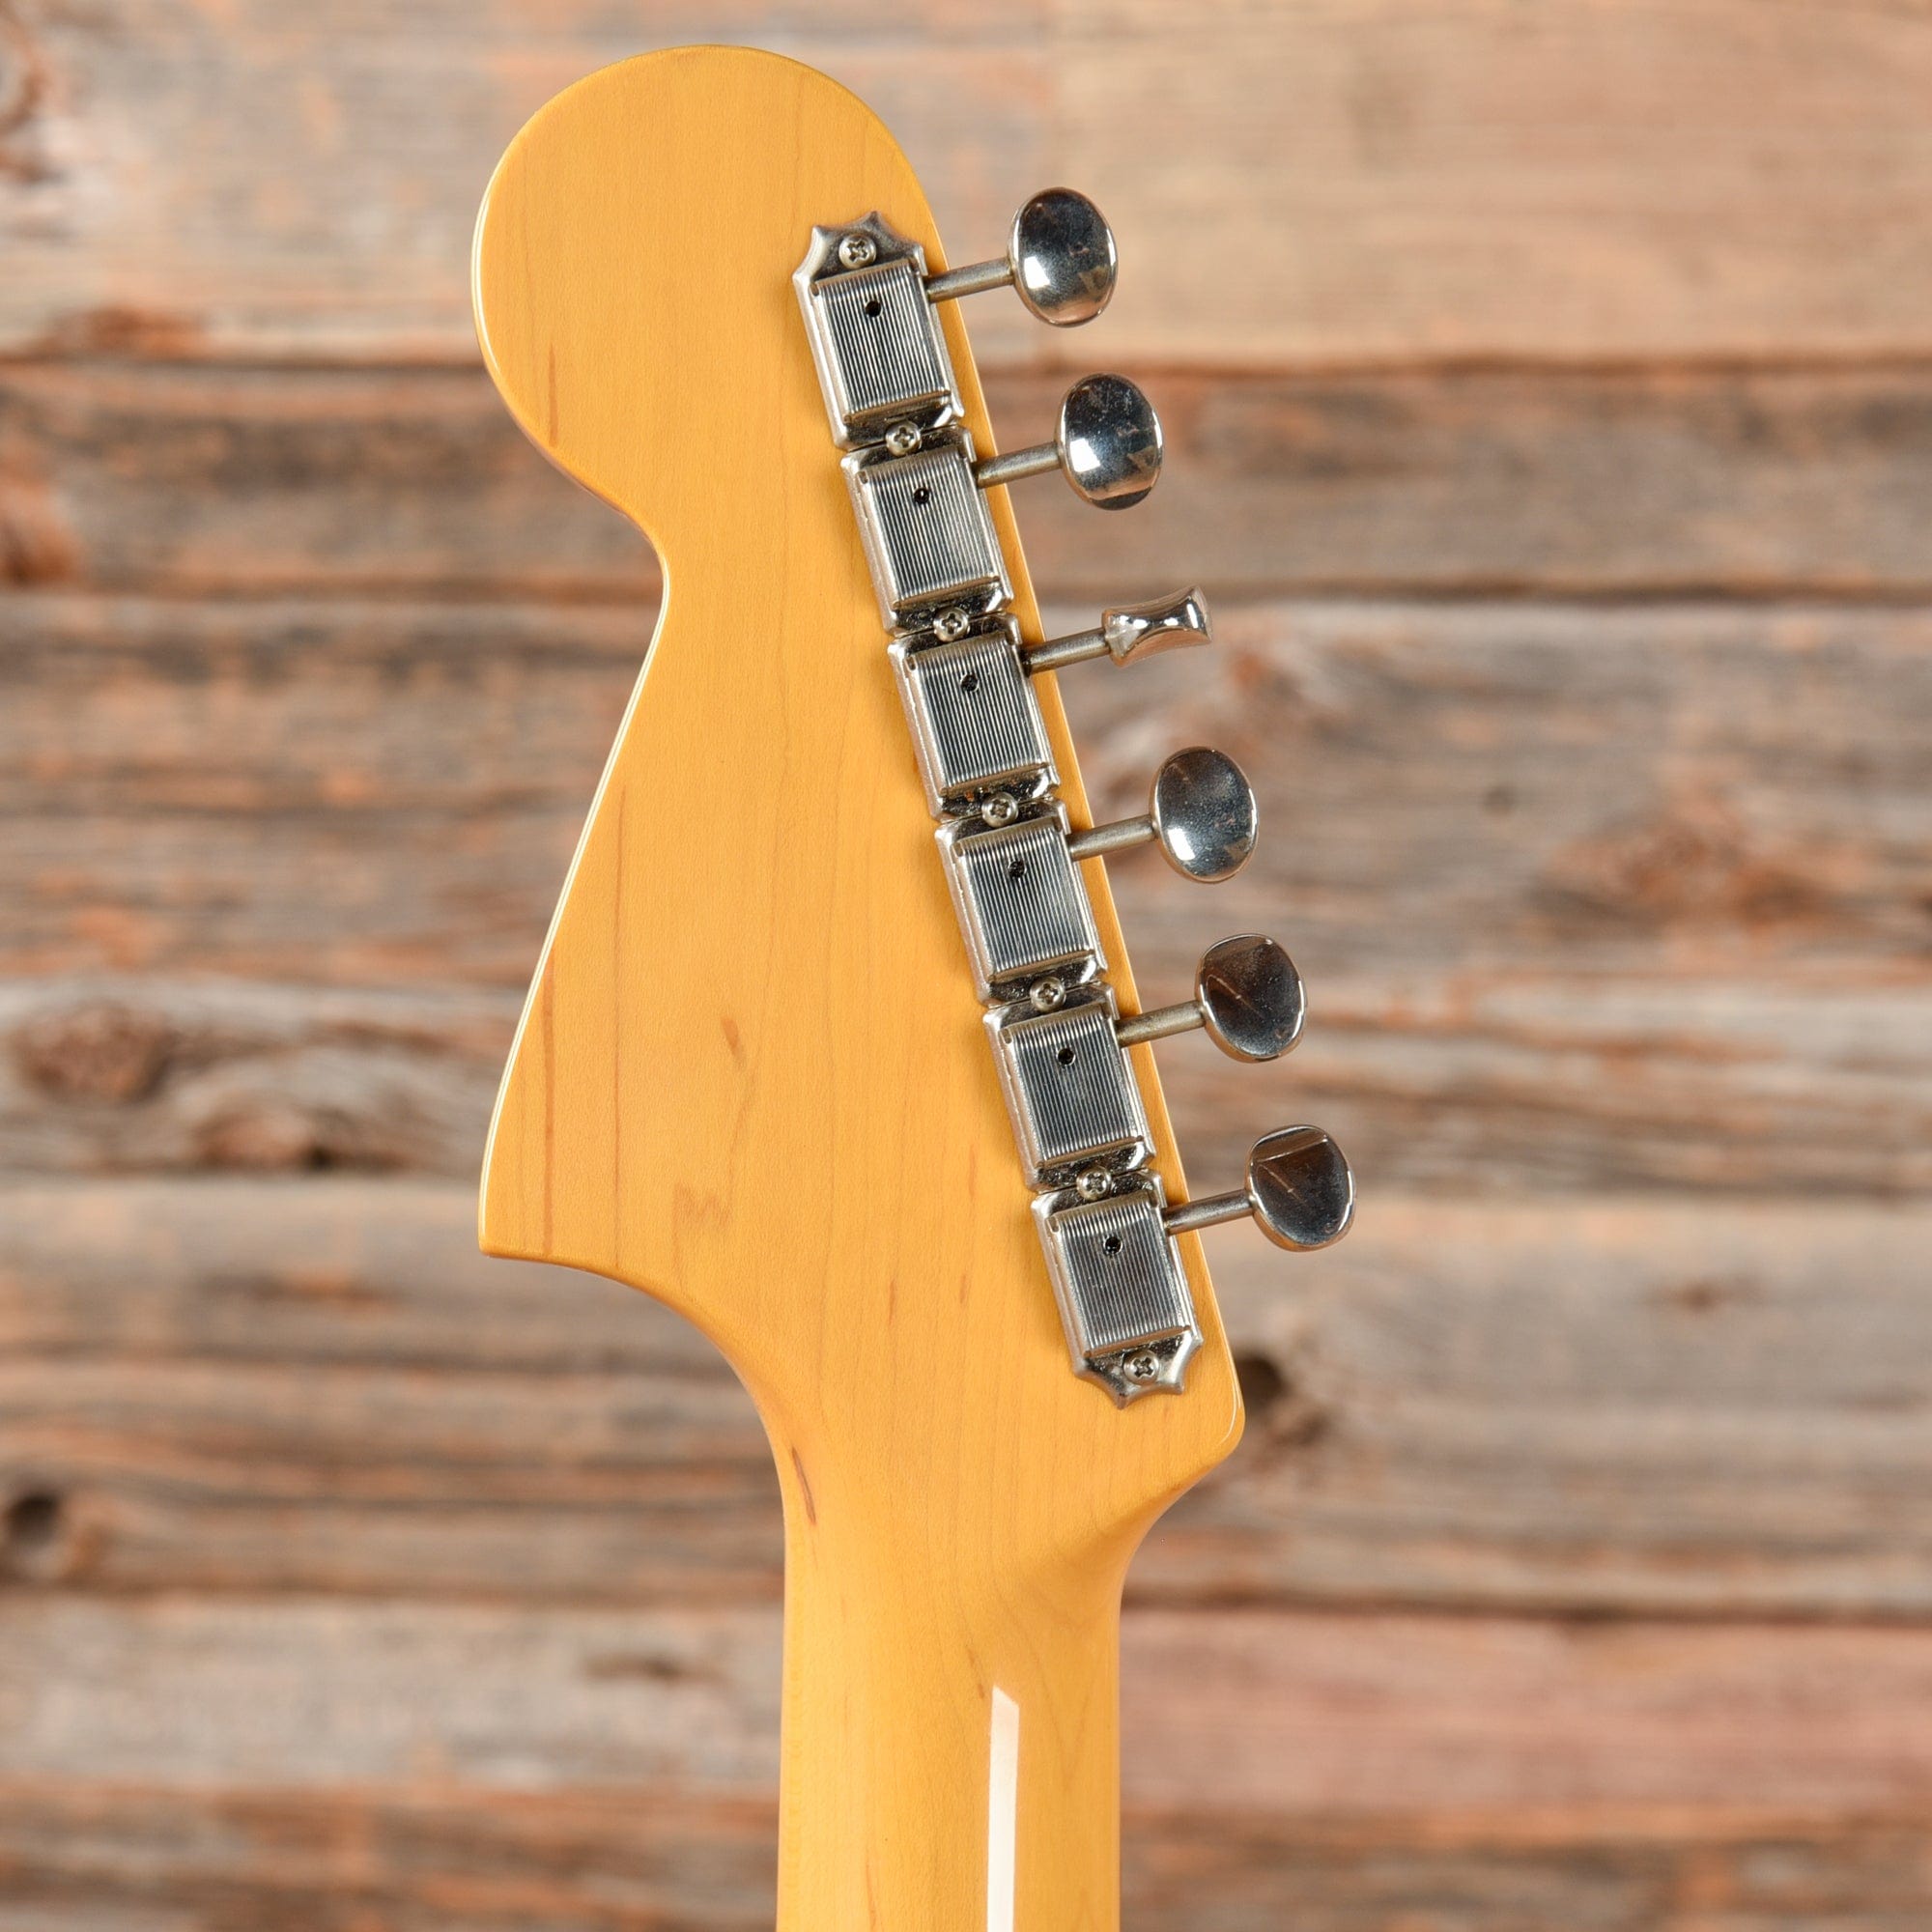 Fender Jaguar Special Vintage Gold 2002 Electric Guitars / Solid Body